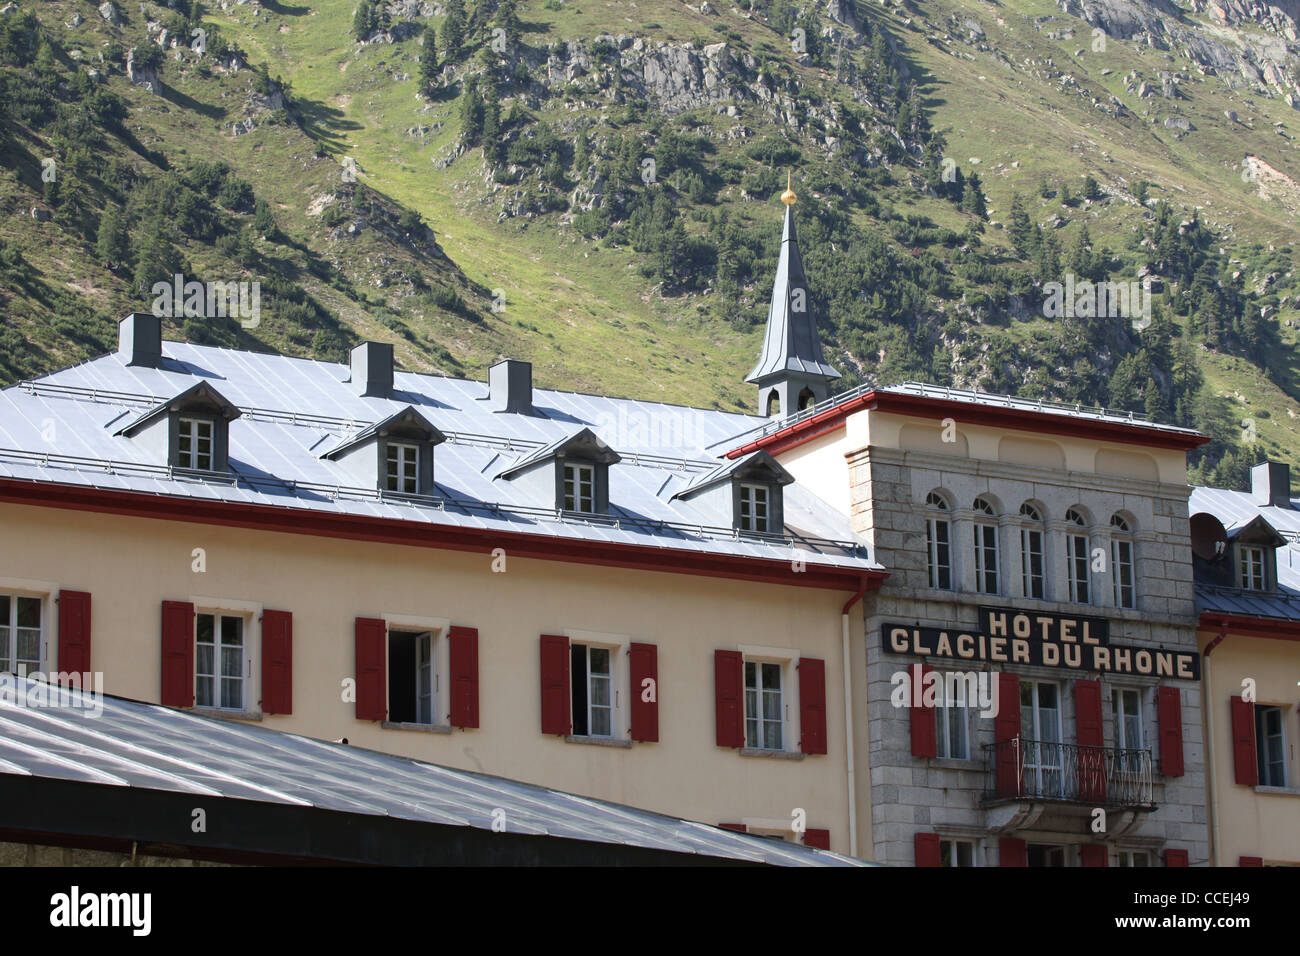 Hotel Glacier du Rhone in the alpine village of Gletsch, Furka, Valais, Alps, Switzerland, Europe Stock Photo